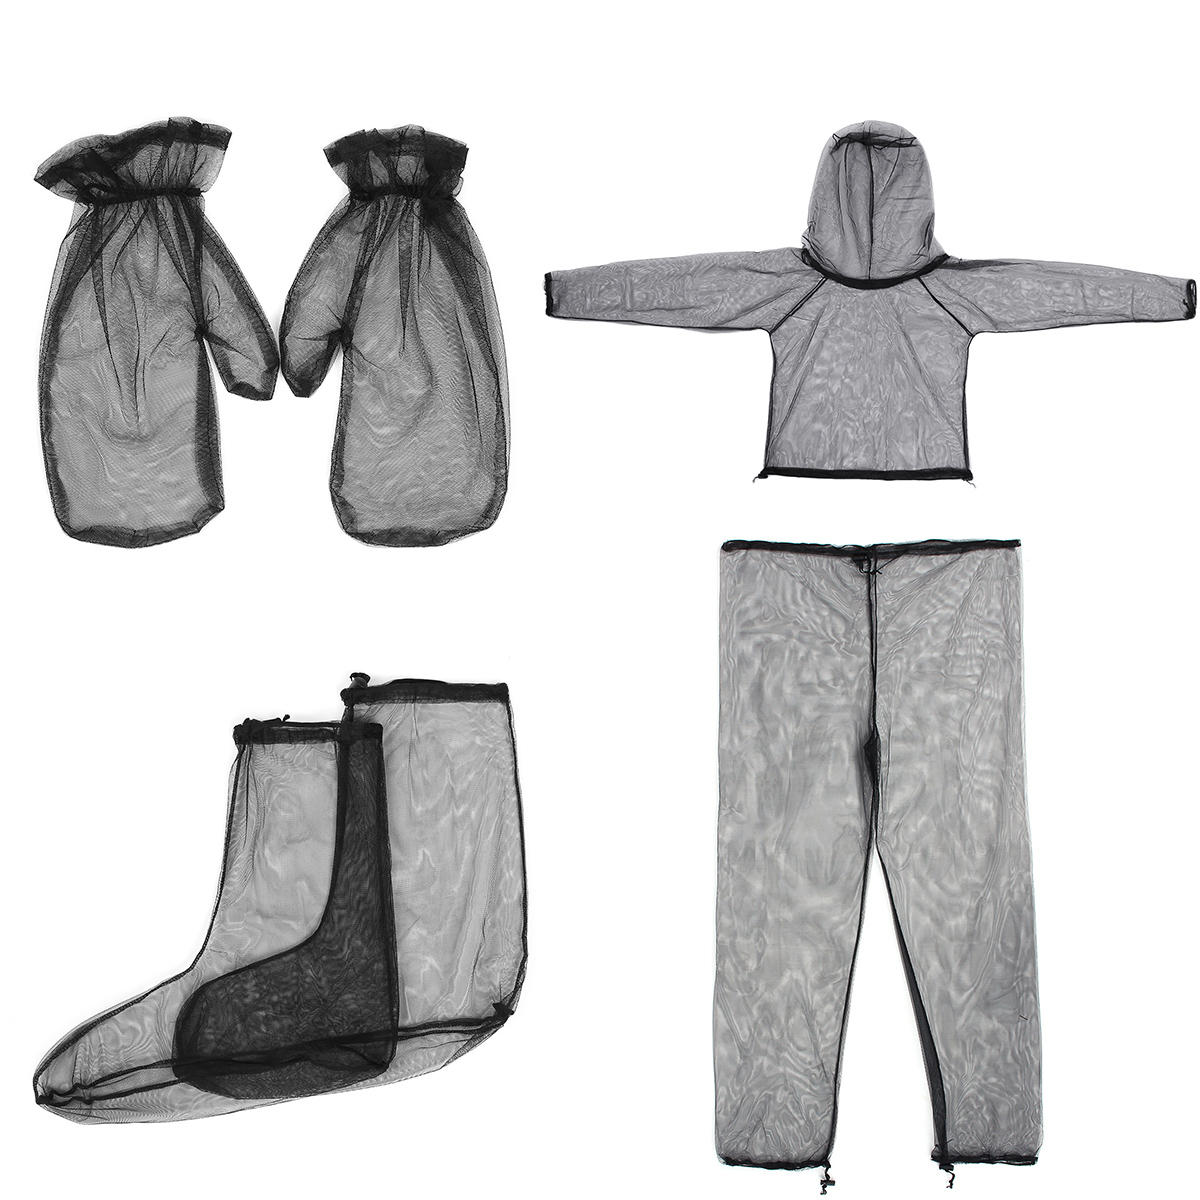 Conjunto leve de viagem e camping ao ar livre em malha de alta densidade composto por jaqueta, calça, luvas e meias anti-mosquito.